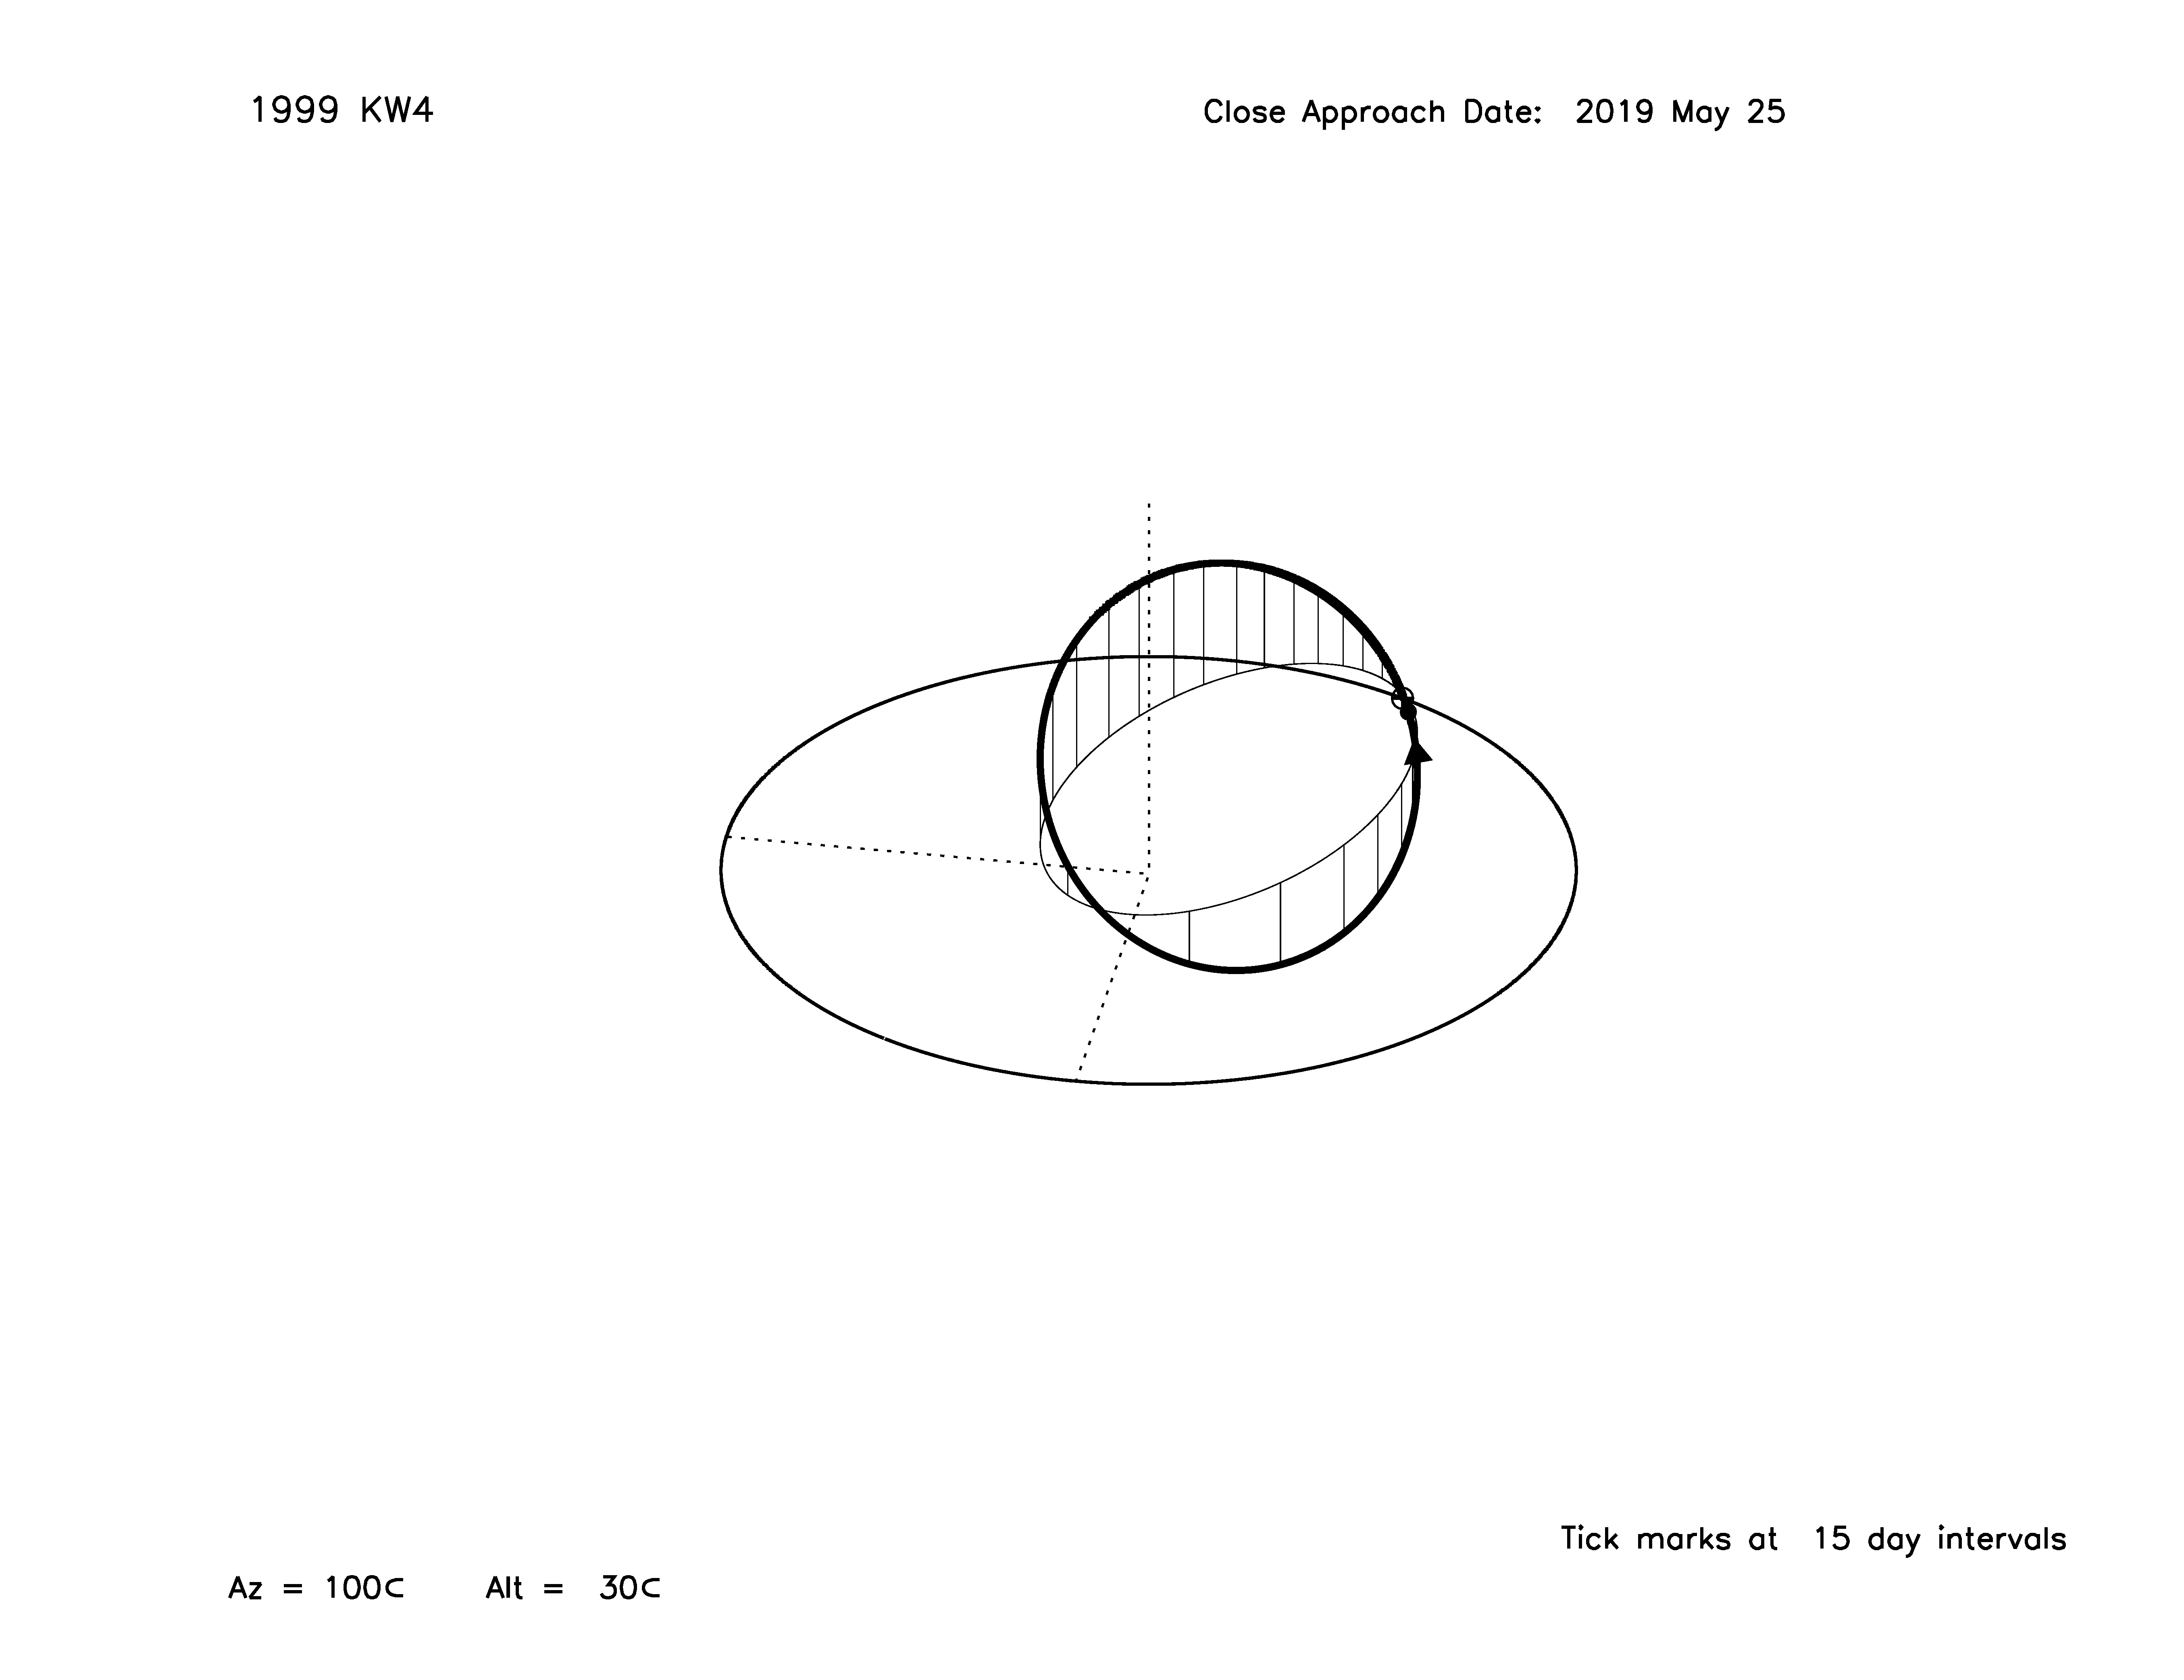 Oblique view of 1999 KW4's orbit.